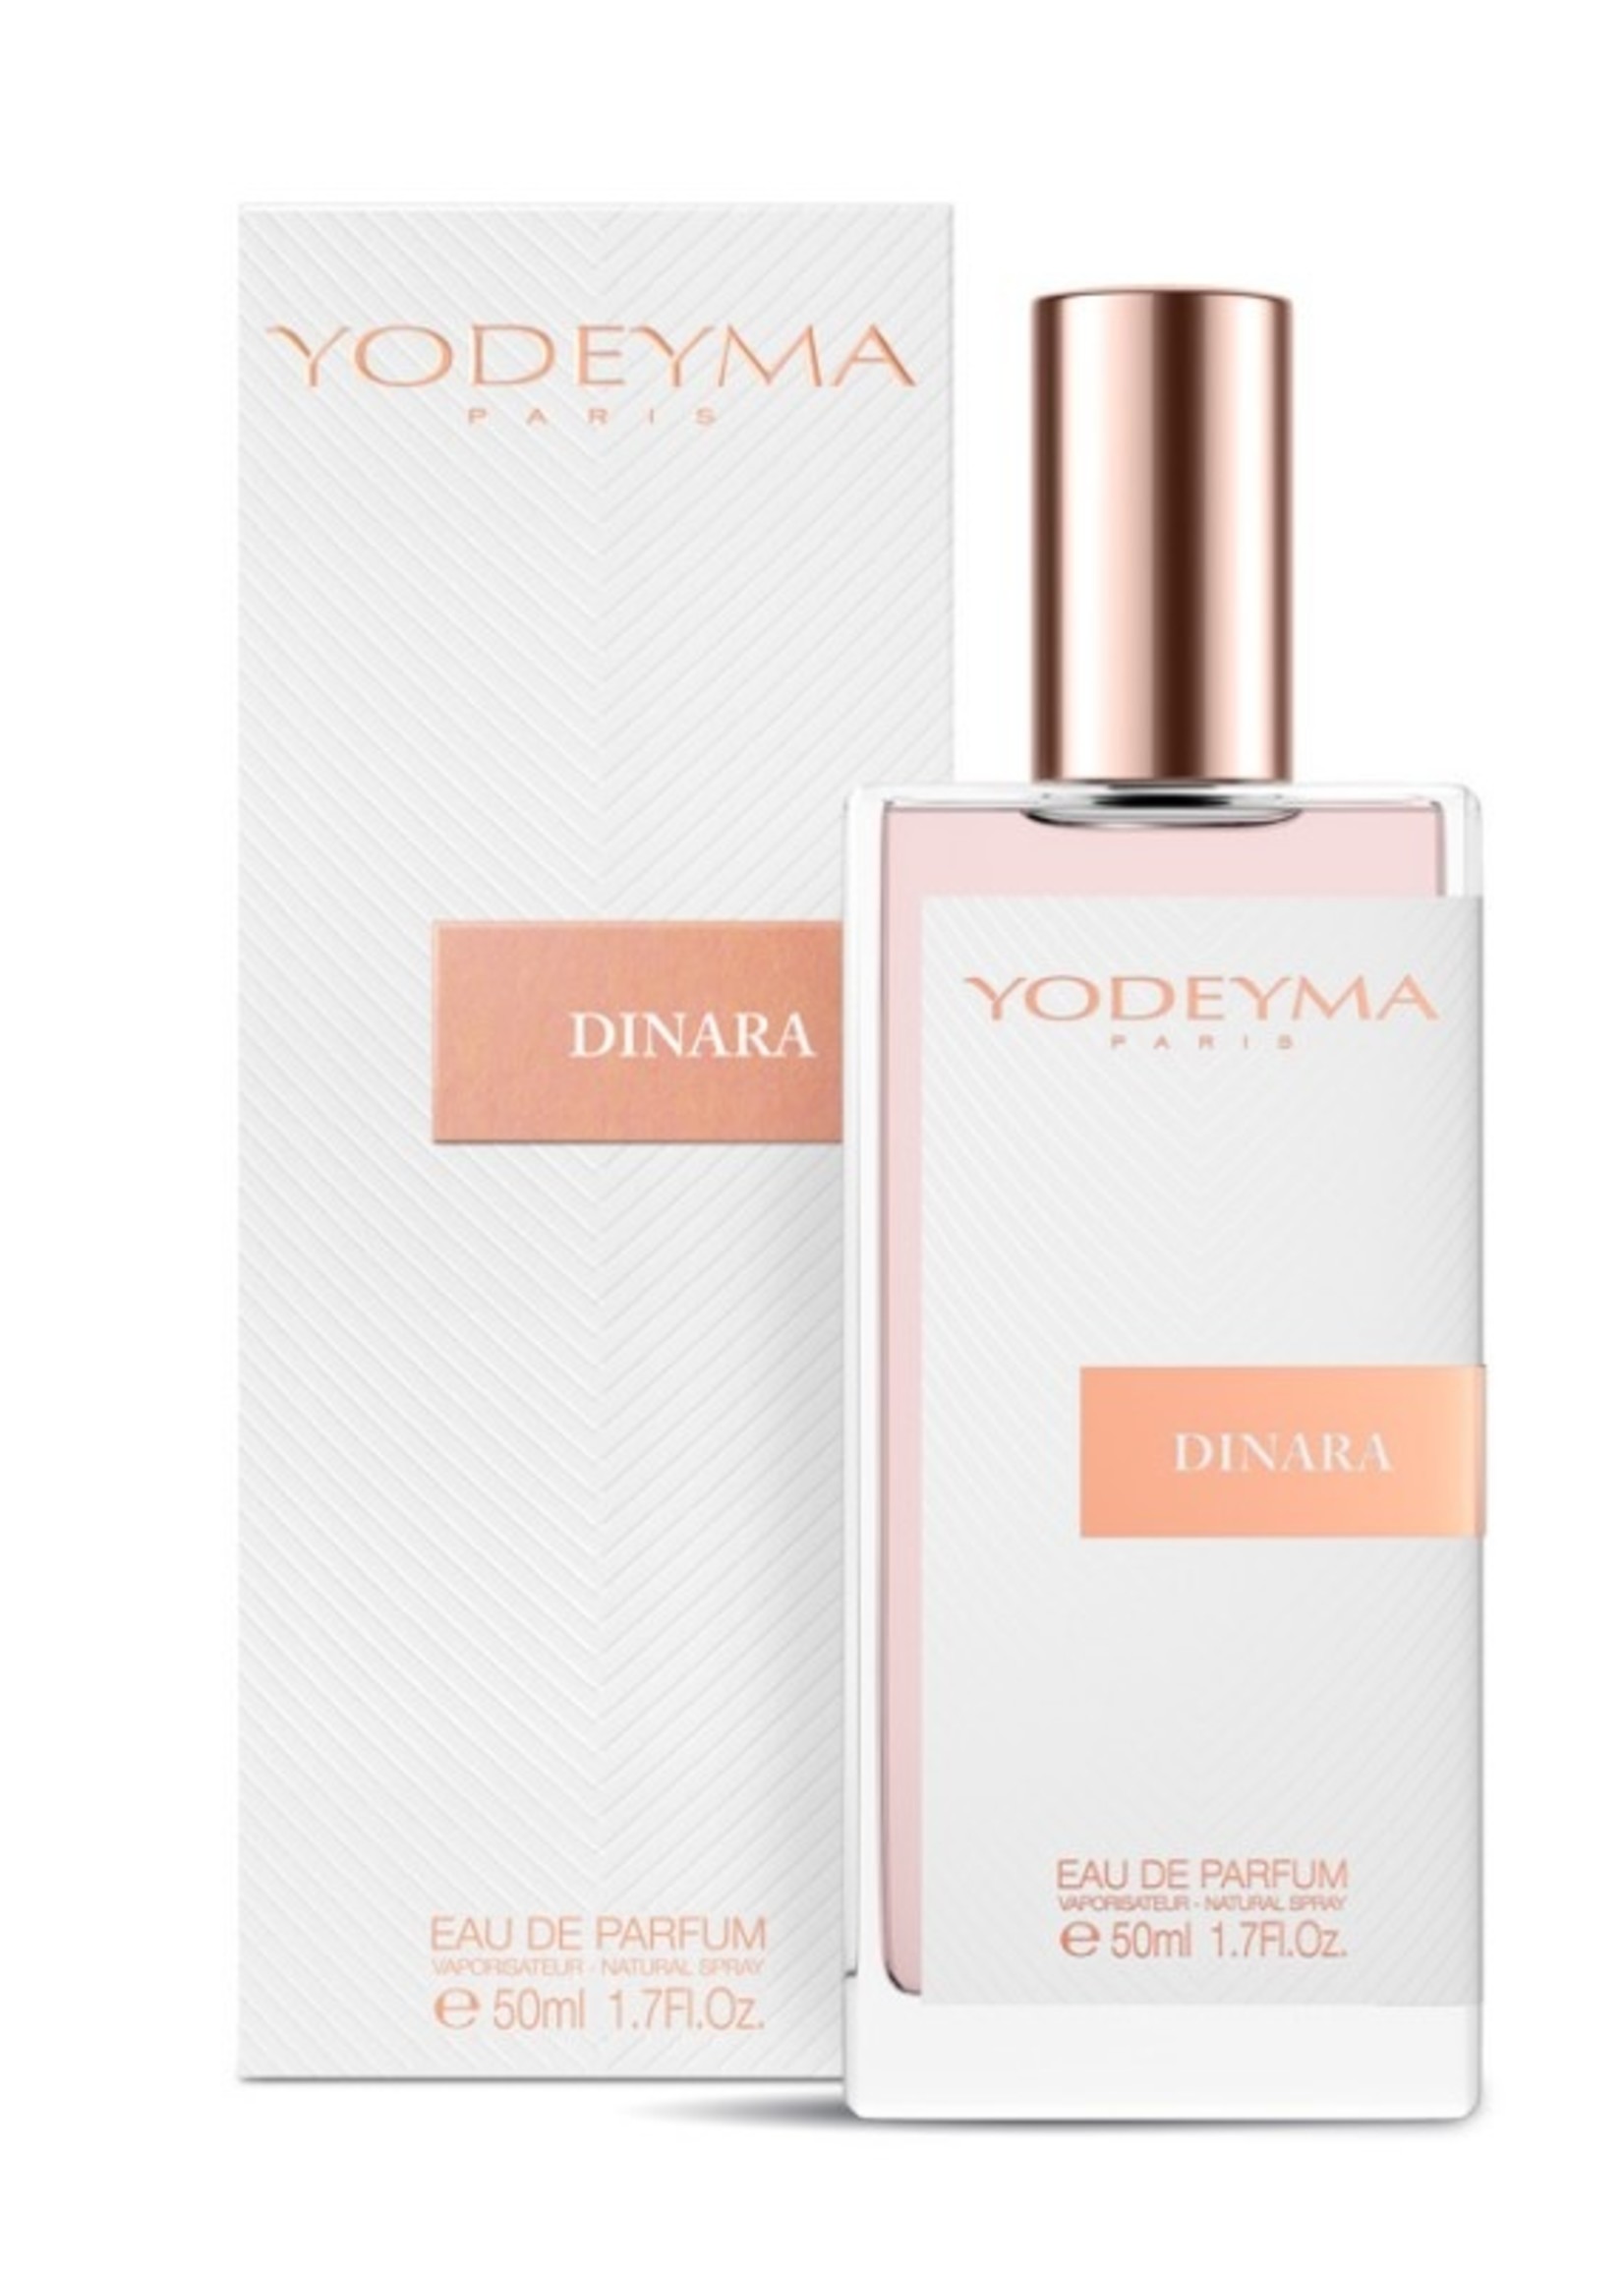 Yodeyma Parfums DINARA Eau de Parfum 50 ml.